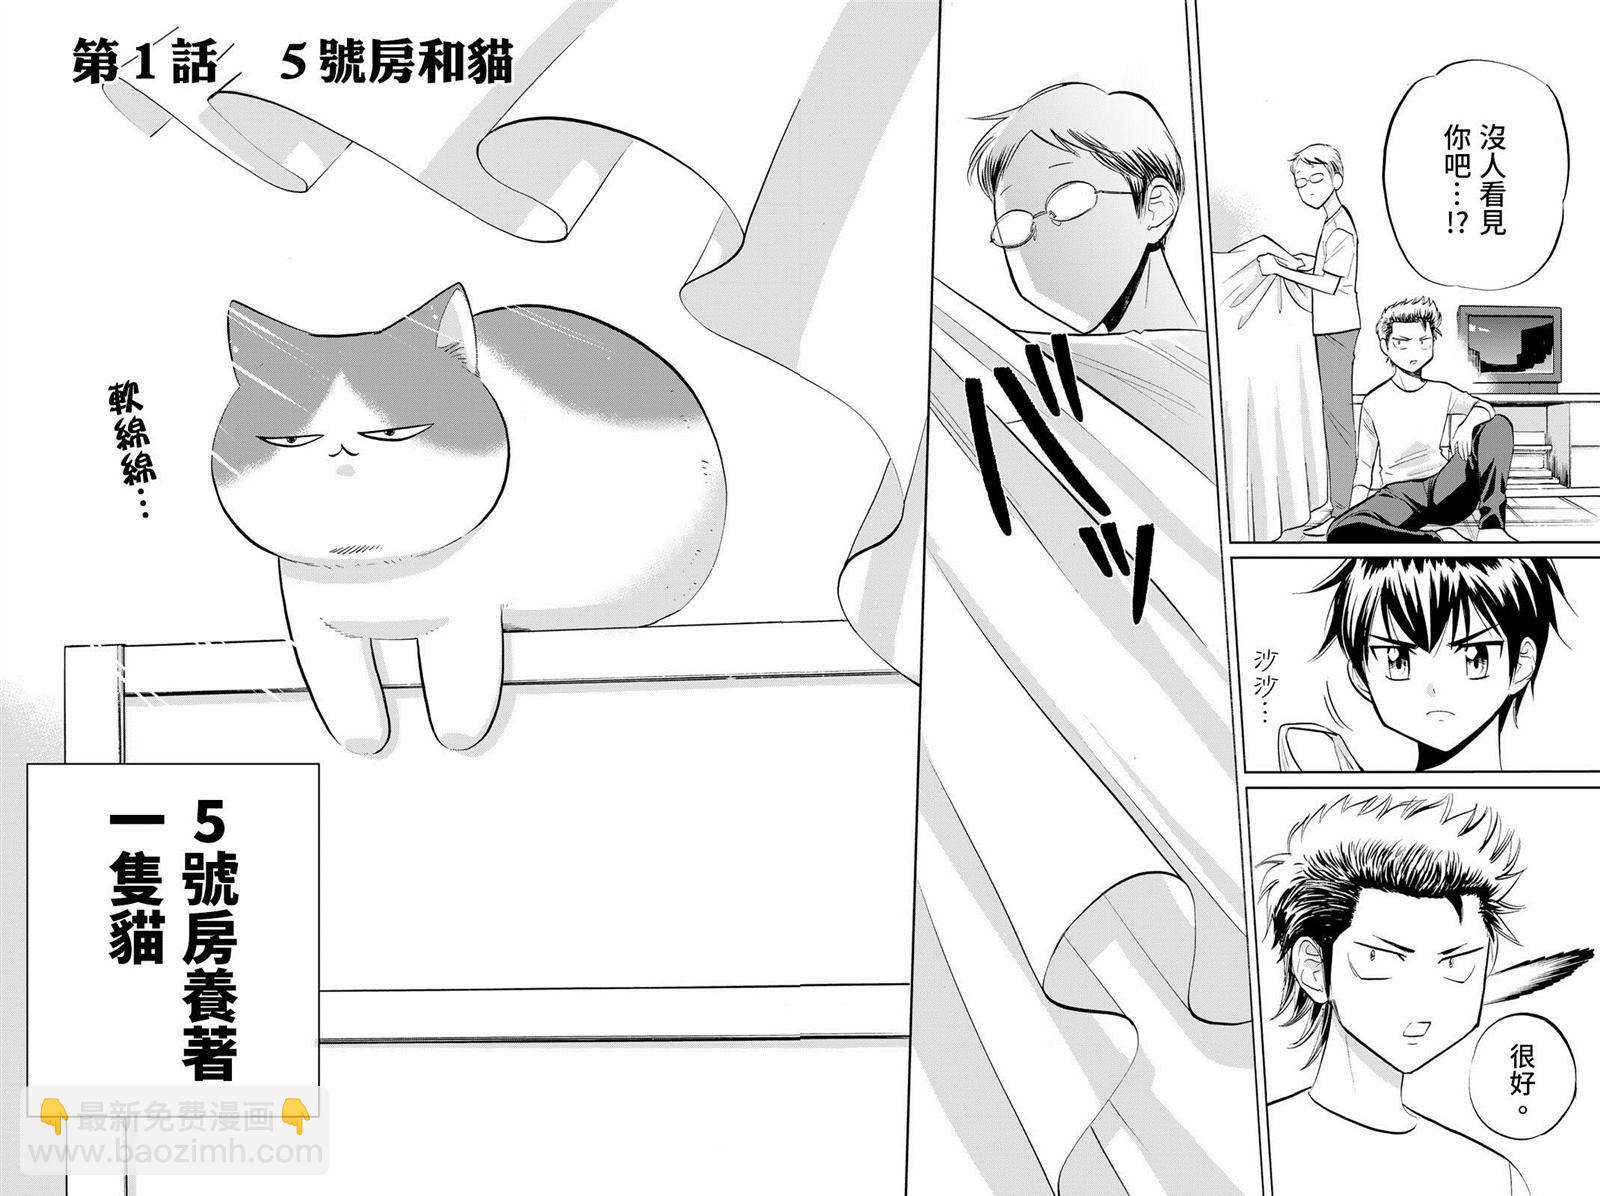 鑽石貓貓!!青道高中棒球部貓日誌 - 第1話 5號房和貓 - 5